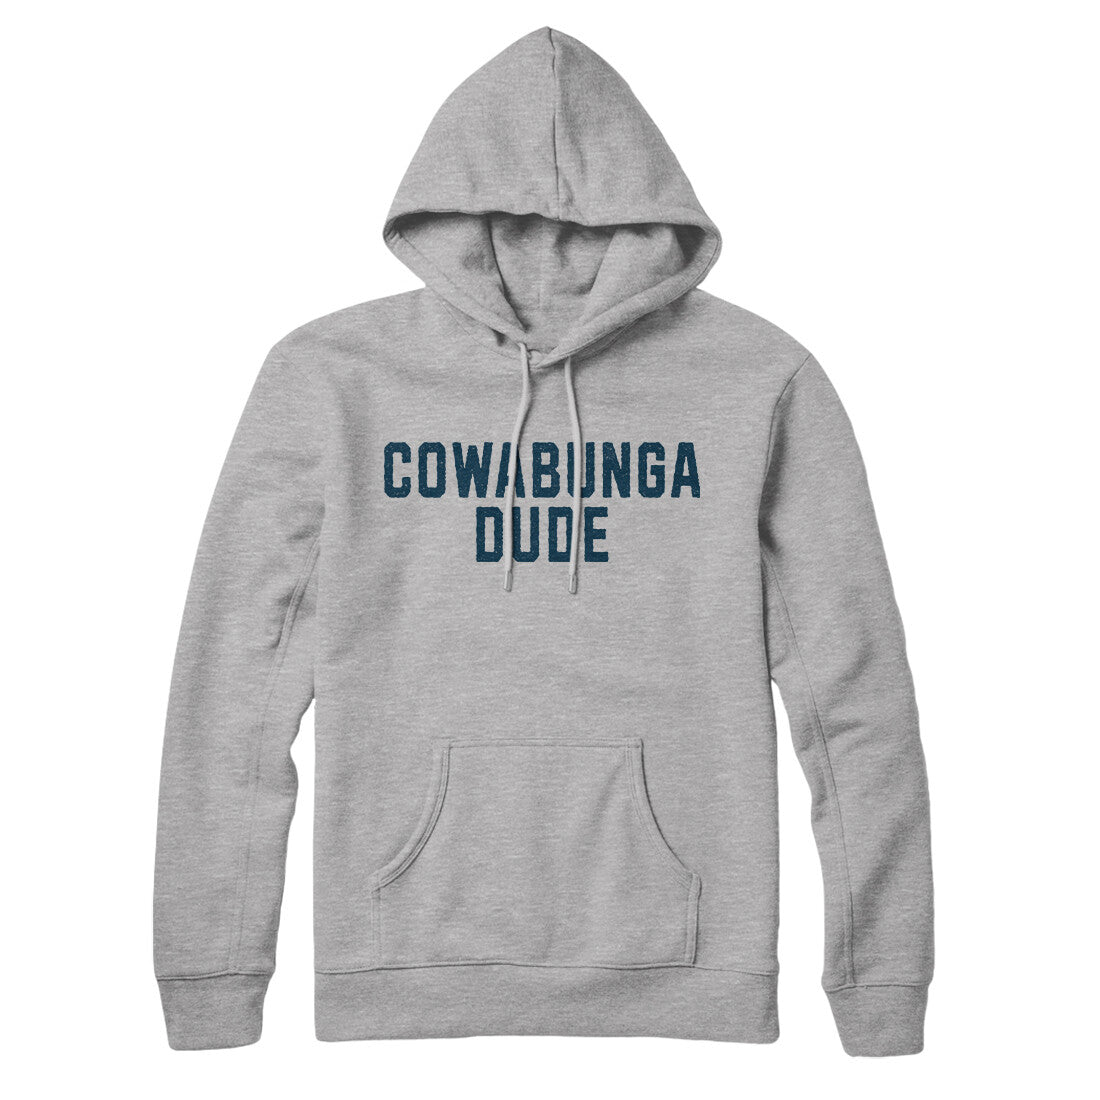 Cowabunga Dude in Heather Grey Color